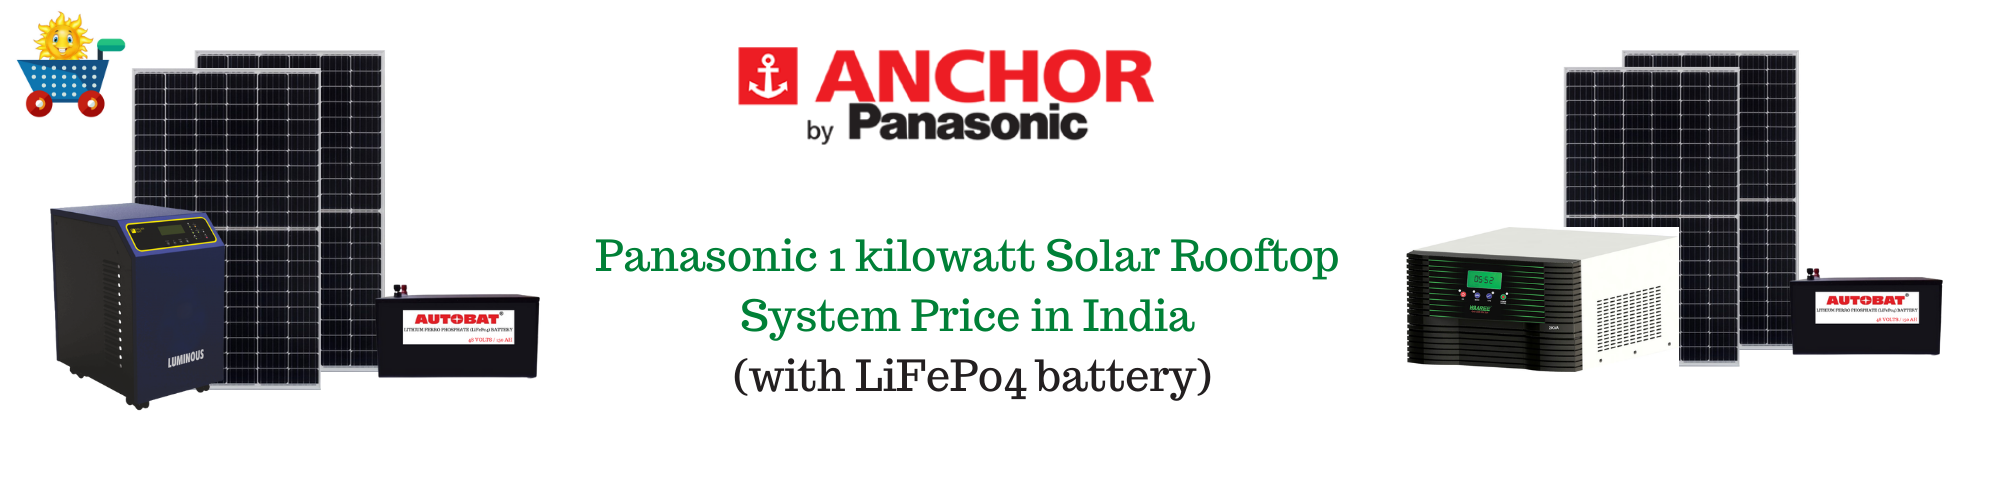 Panasonic solar panel price for 1 kw in India